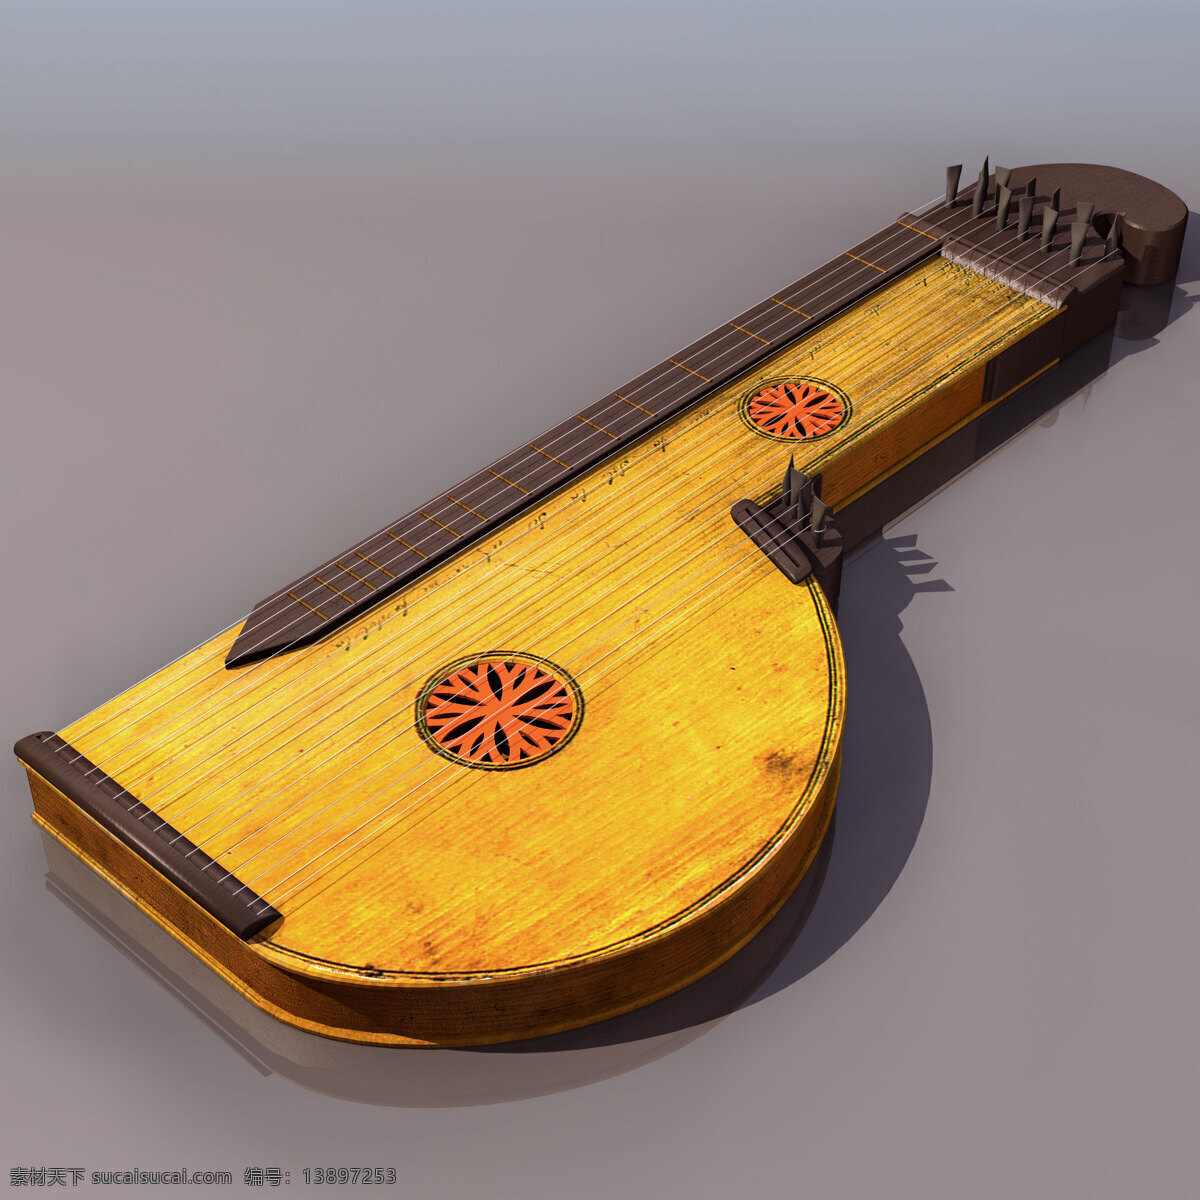 古筝 乐器 模型 zither 文化用品 古筝乐器模型 乐器模型 3d模型素材 电器模型